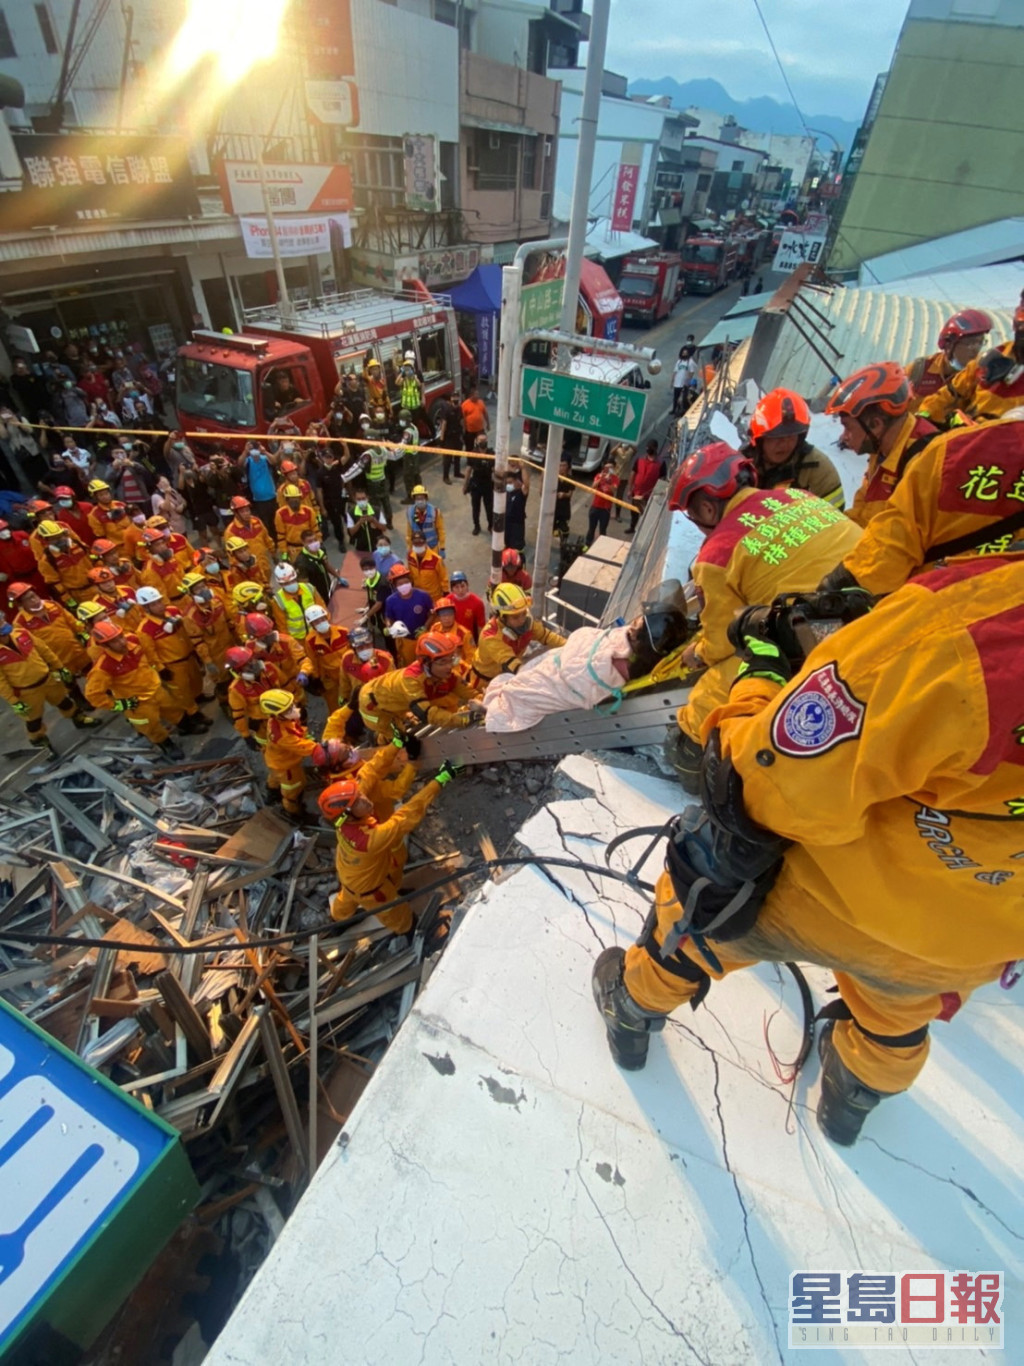 搜救人员在瓦砾中救出伤者。AP